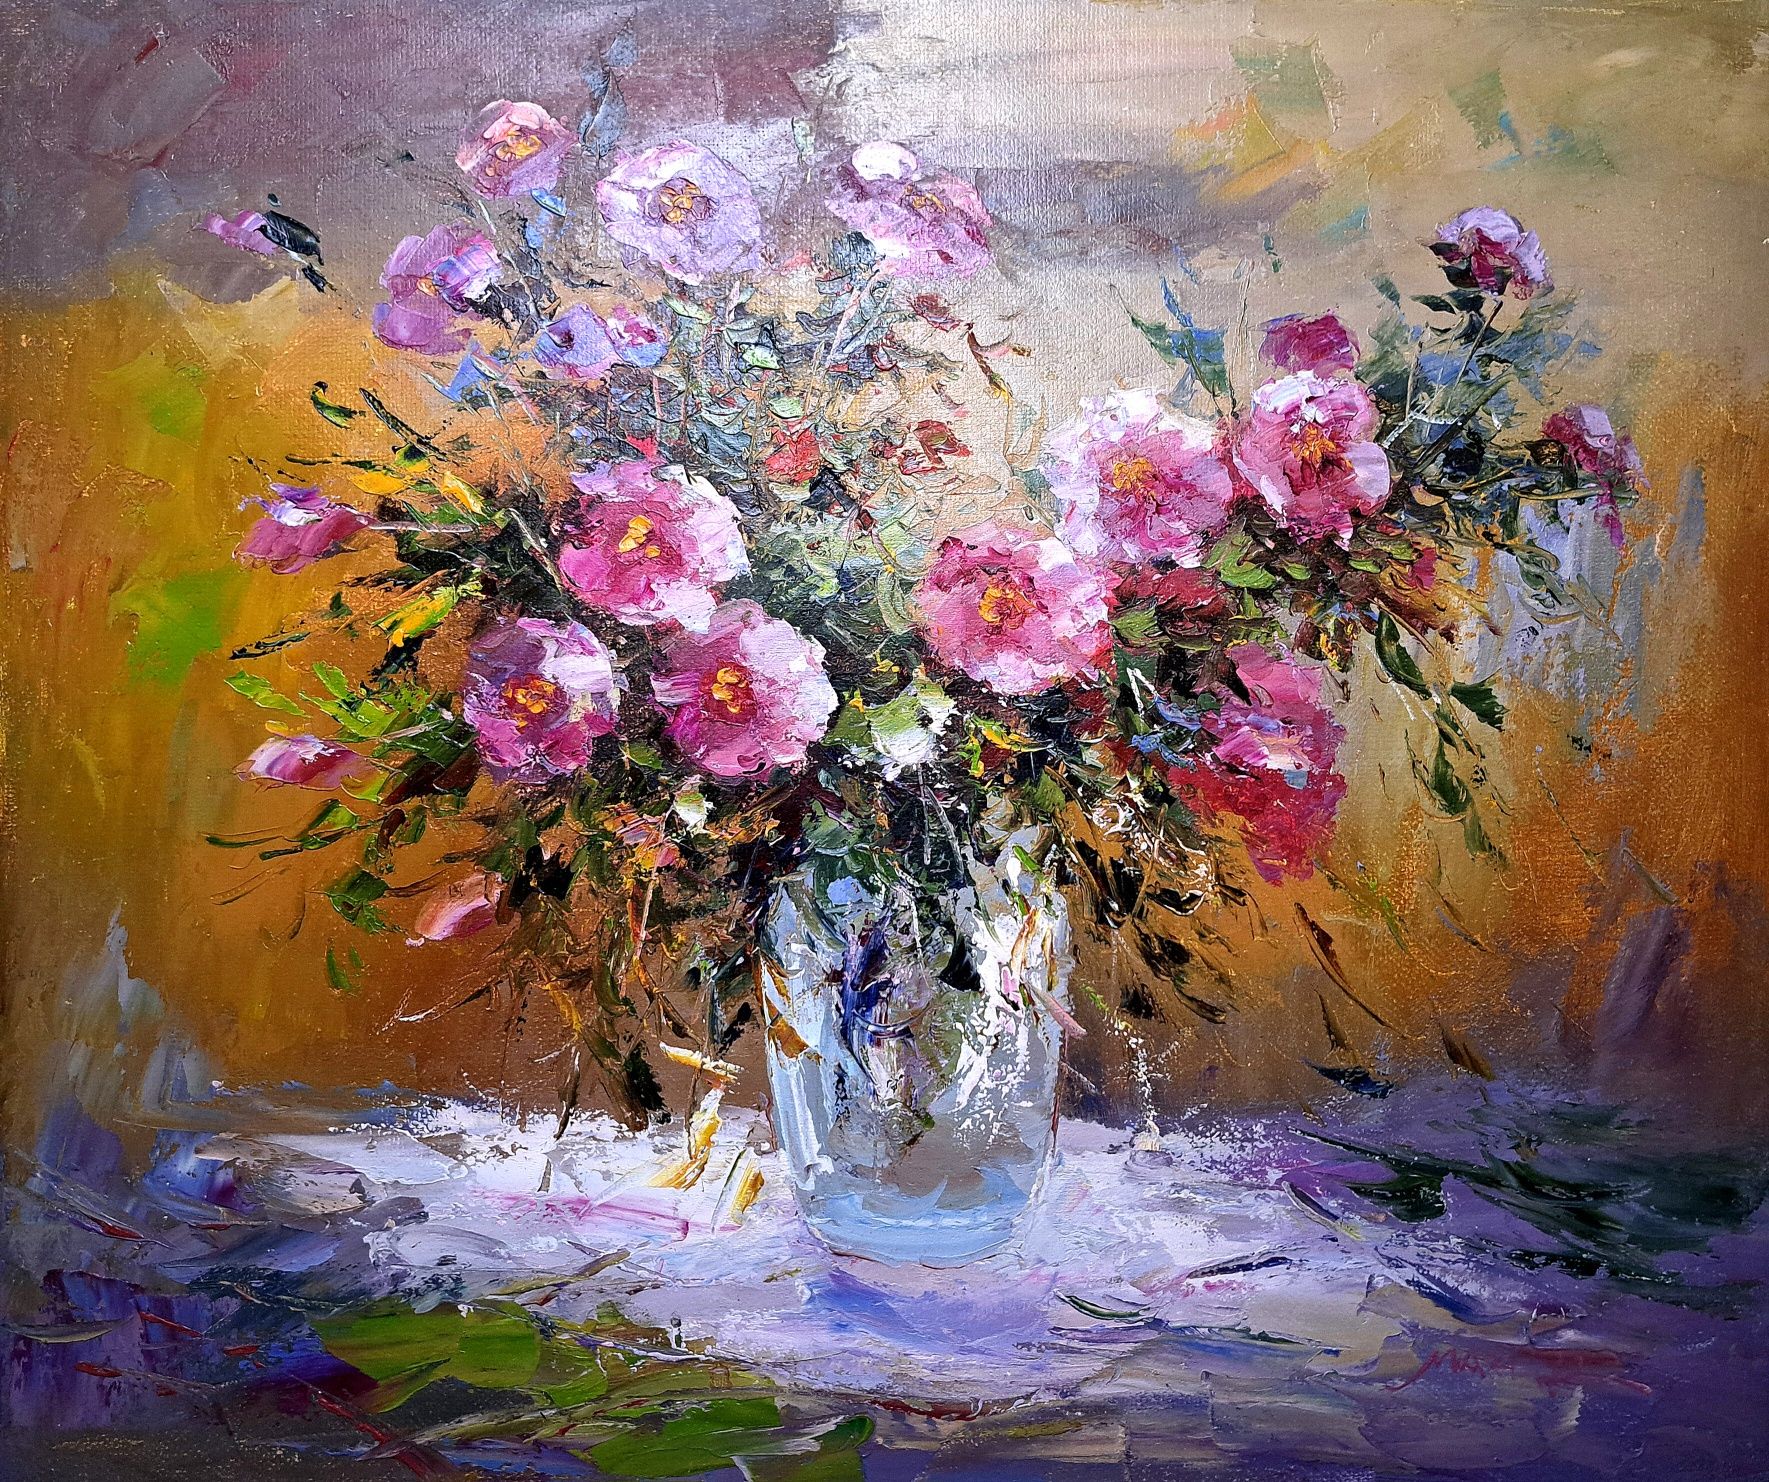 Kwiaty w wazonie - obraz olejny na płótnie 50cm x 60cm